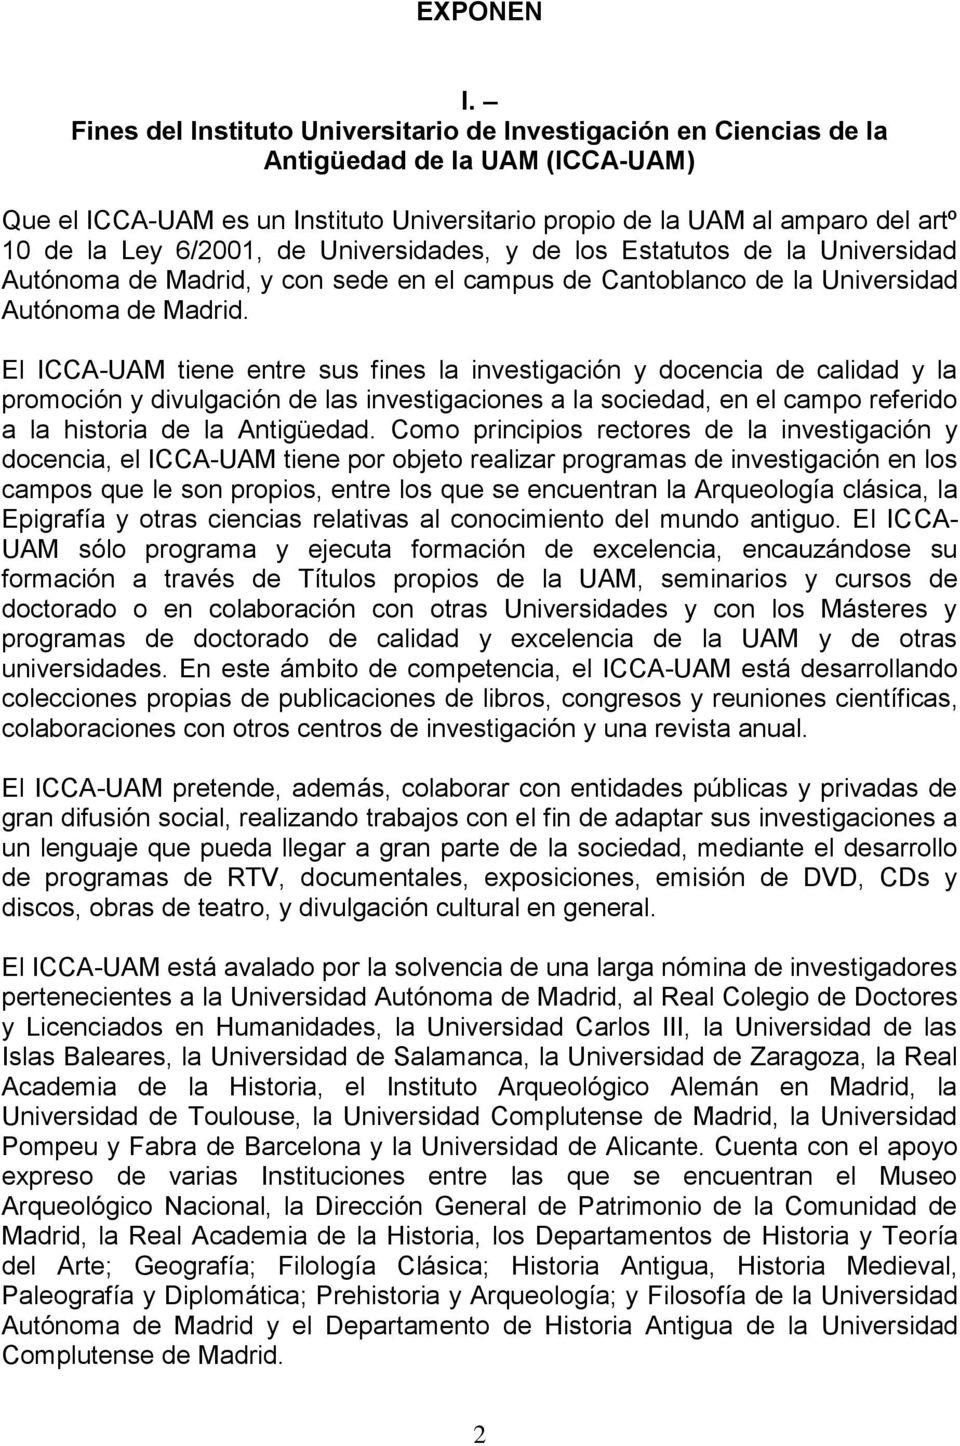 6/2001, de Universidades, y de los Estatutos de la Universidad Autónoma de Madrid, y con sede en el campus de Cantoblanco de la Universidad Autónoma de Madrid.